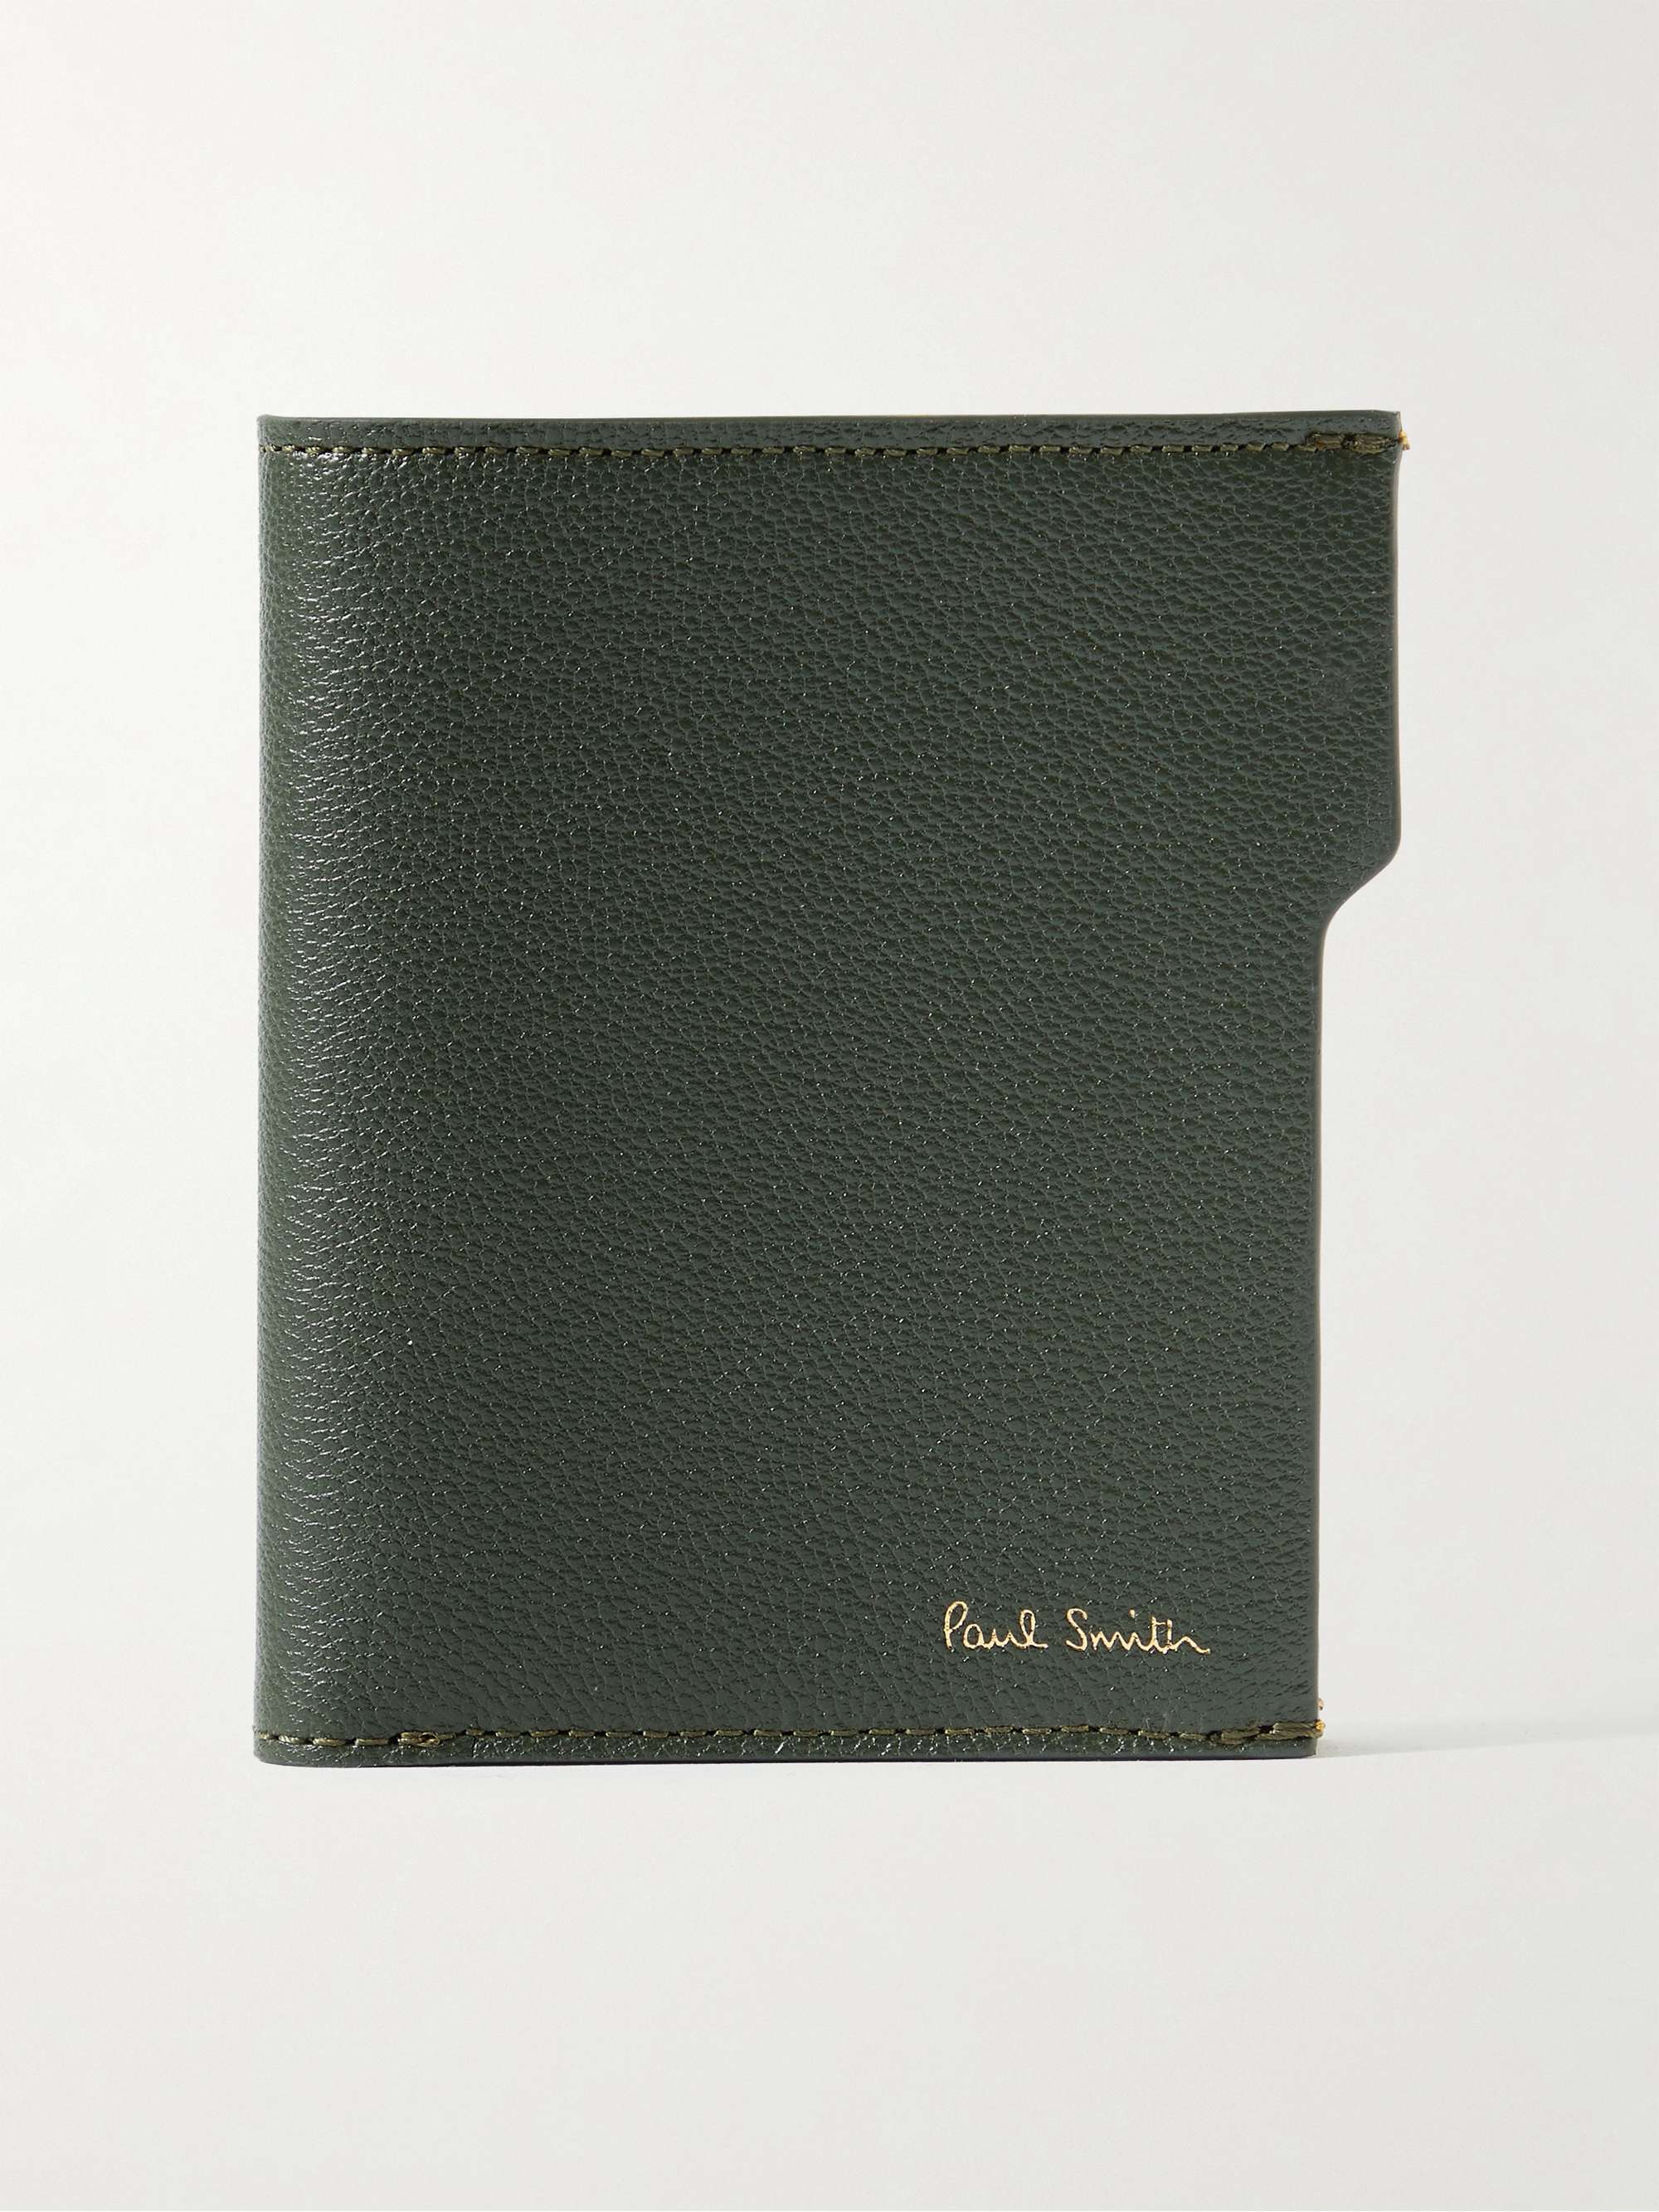 PAUL SMITH Pebble-Grain Leather Billfold Wallet